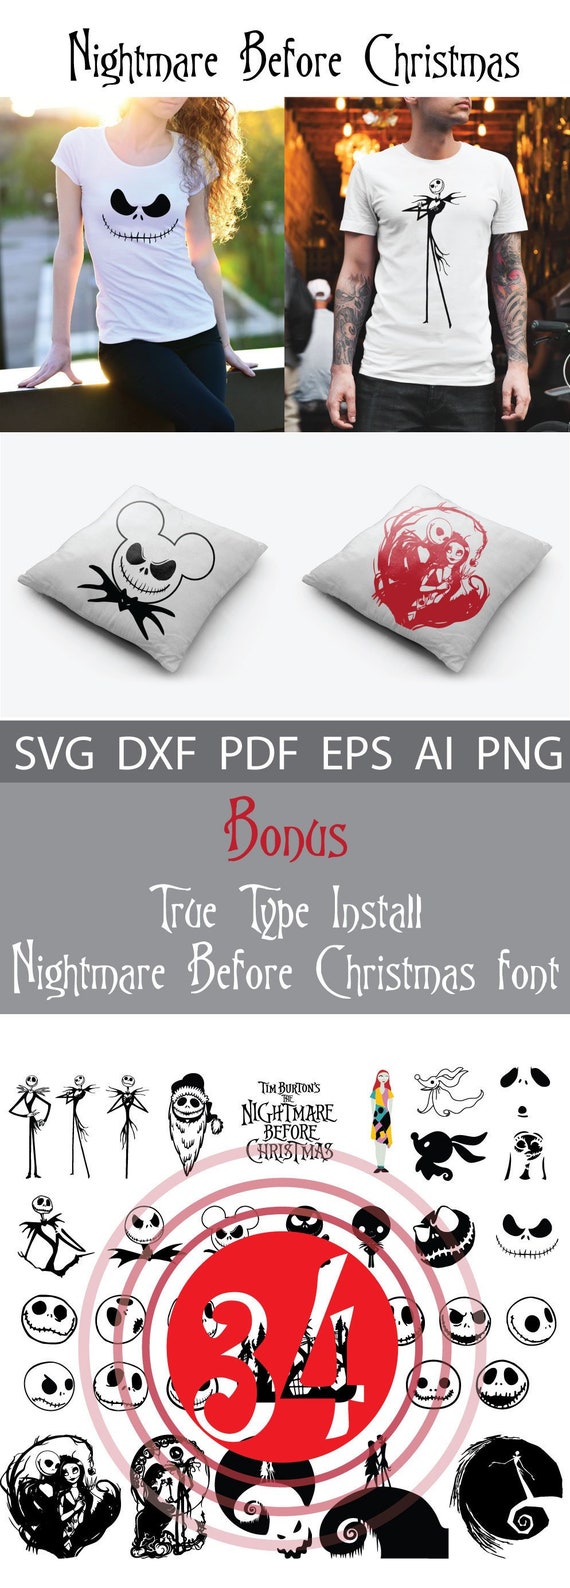 Download Free Nightmare Before Christmas Svg Jack Skellington Svg Jack And Etsy SVG DXF Cut File